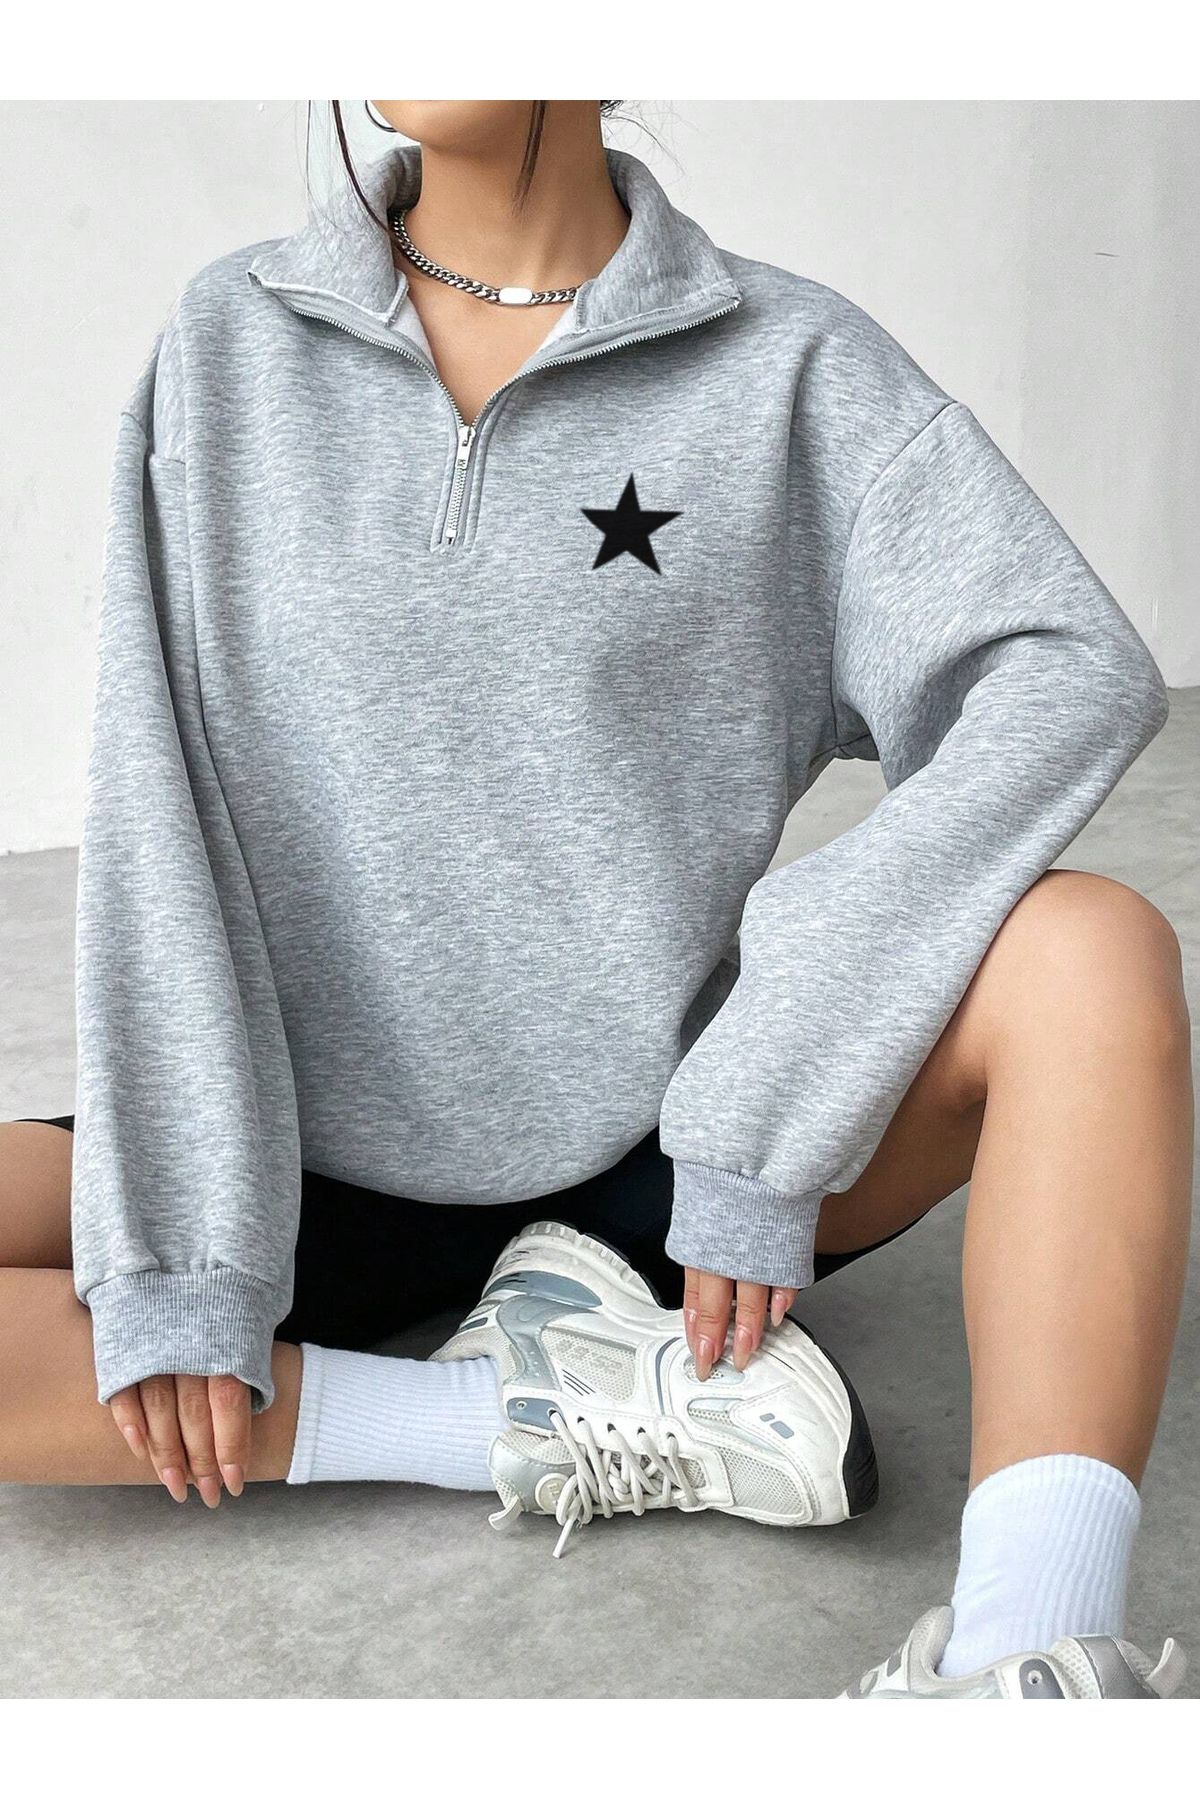 Jooy Company Yarım Fermuarlı Yıldız Baskılı Gri Kadın Sweatshirt